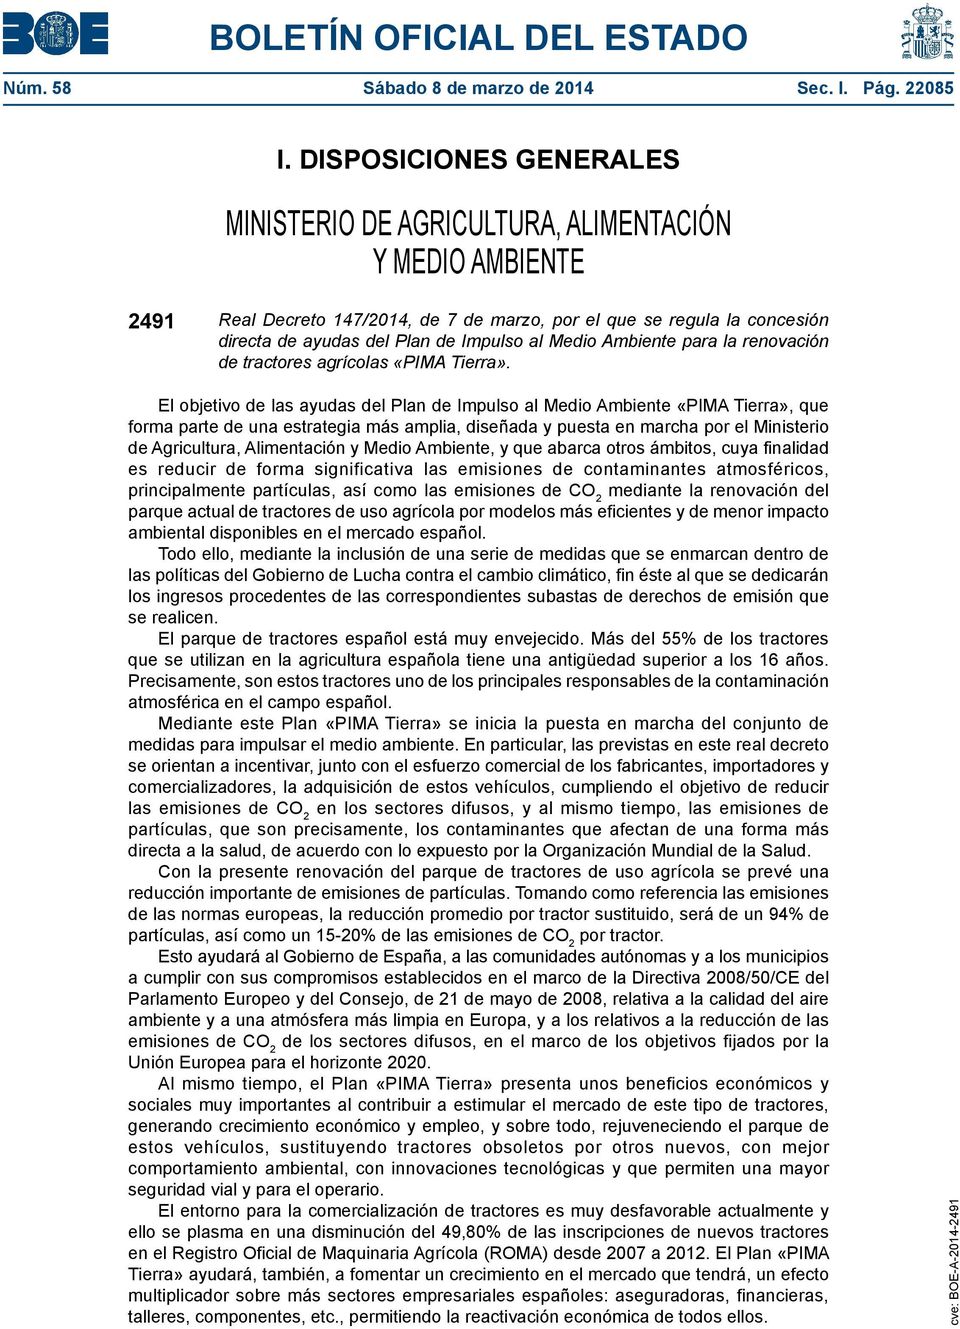 Medio Ambiente para la renovación de tractores agrícolas «PIMA Tierra».